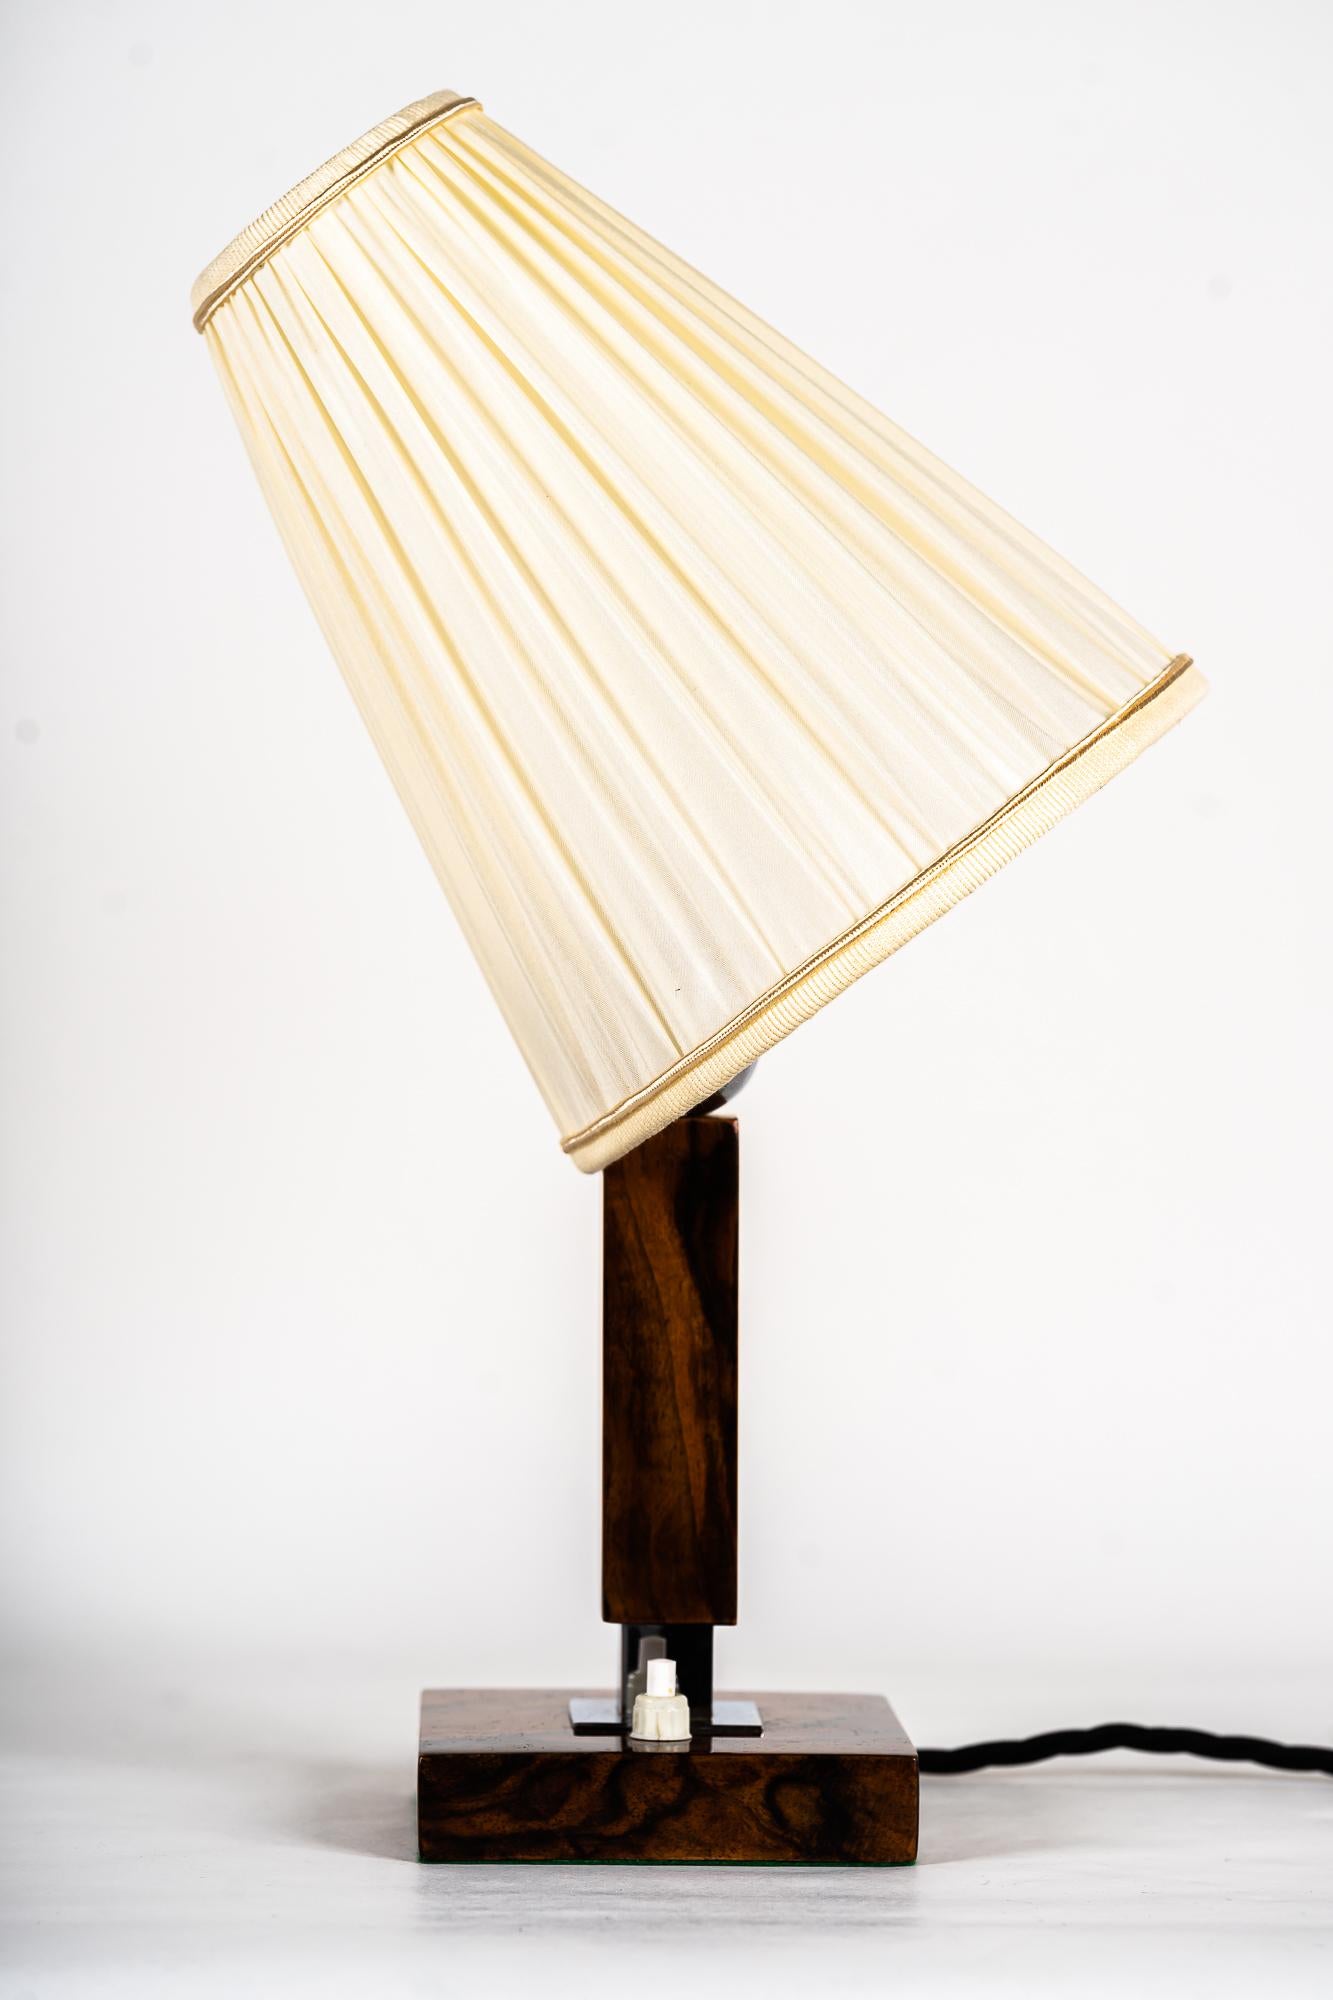 Lampe de table en bois avec abat-jour en tissu vers 1950
Nickel poli
L'abat-jour est remplacé (neuf).